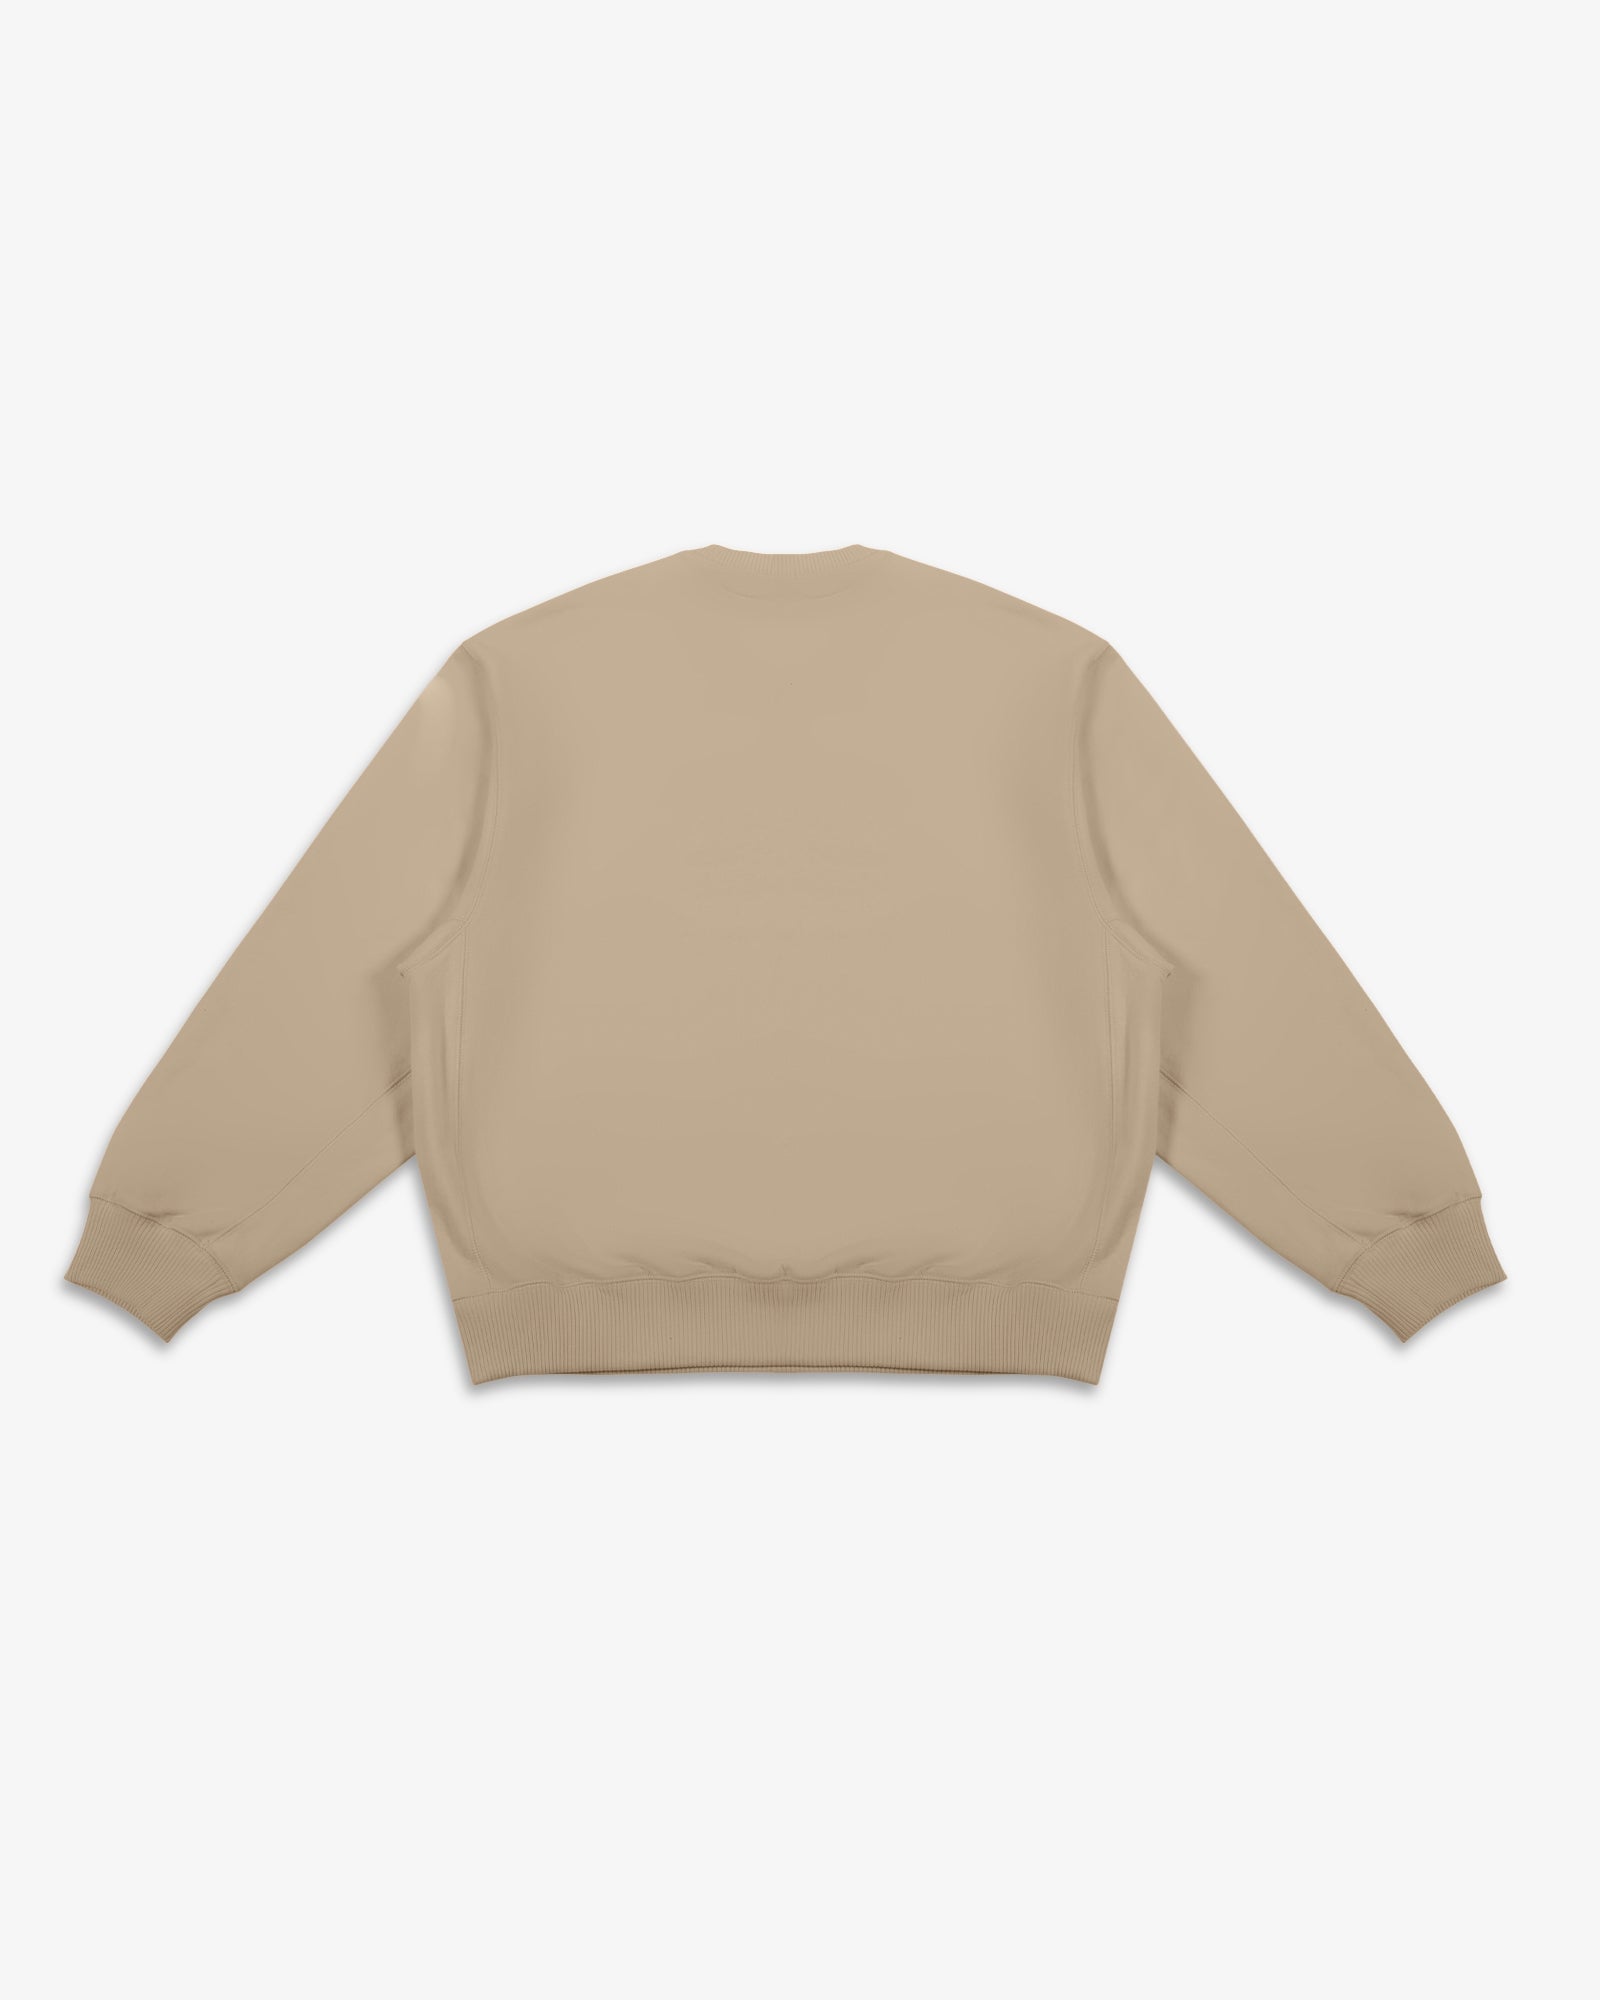 Incision Oversized Sweatshirt (Pebble Brown)